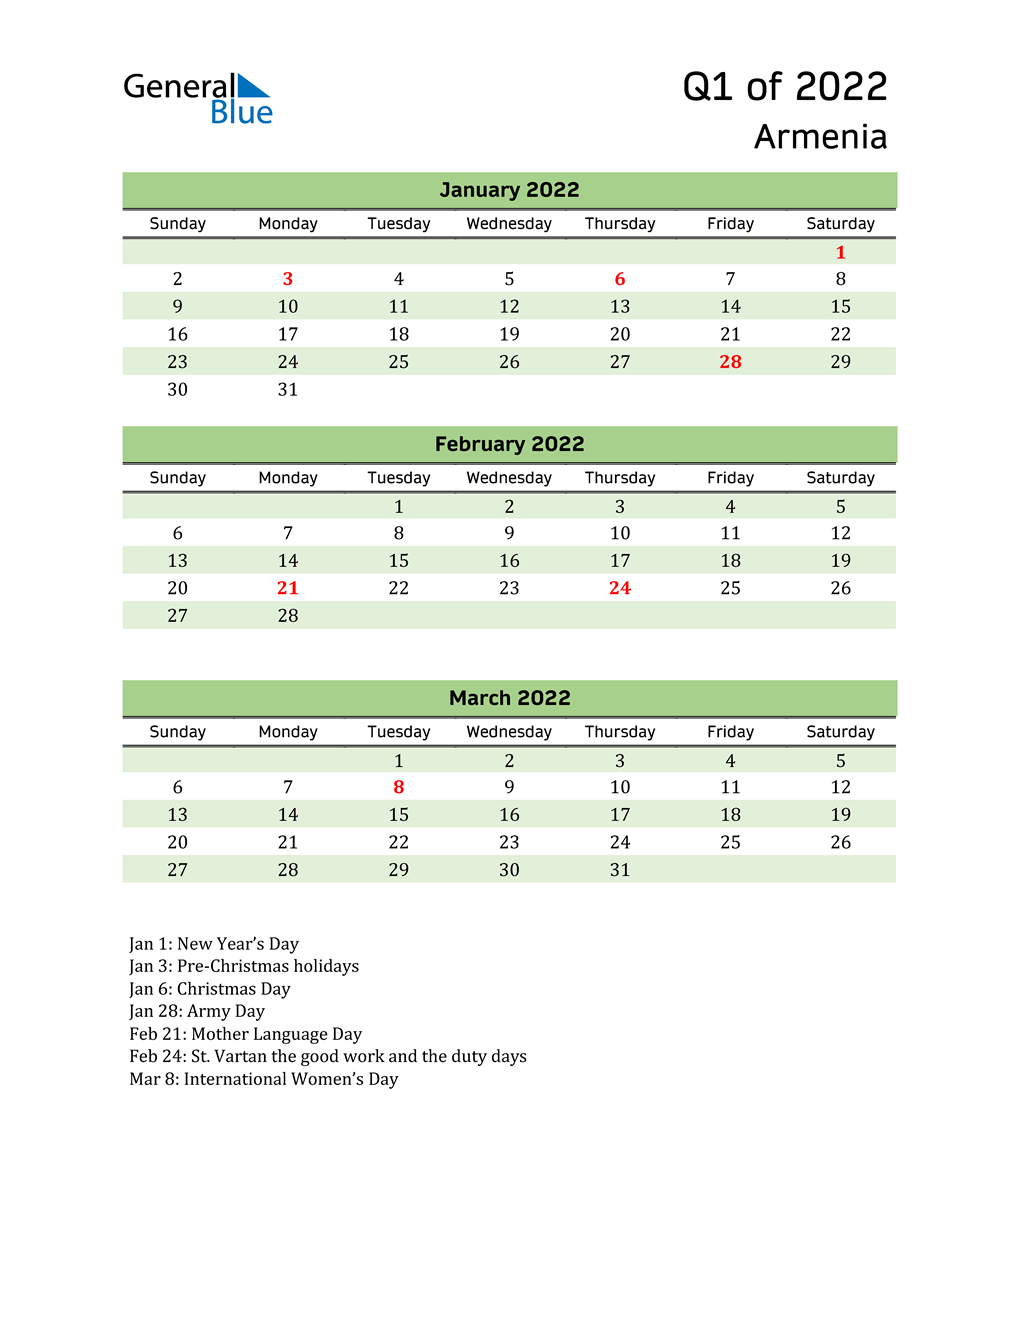  Quarterly Calendar 2022 with Armenia Holidays 